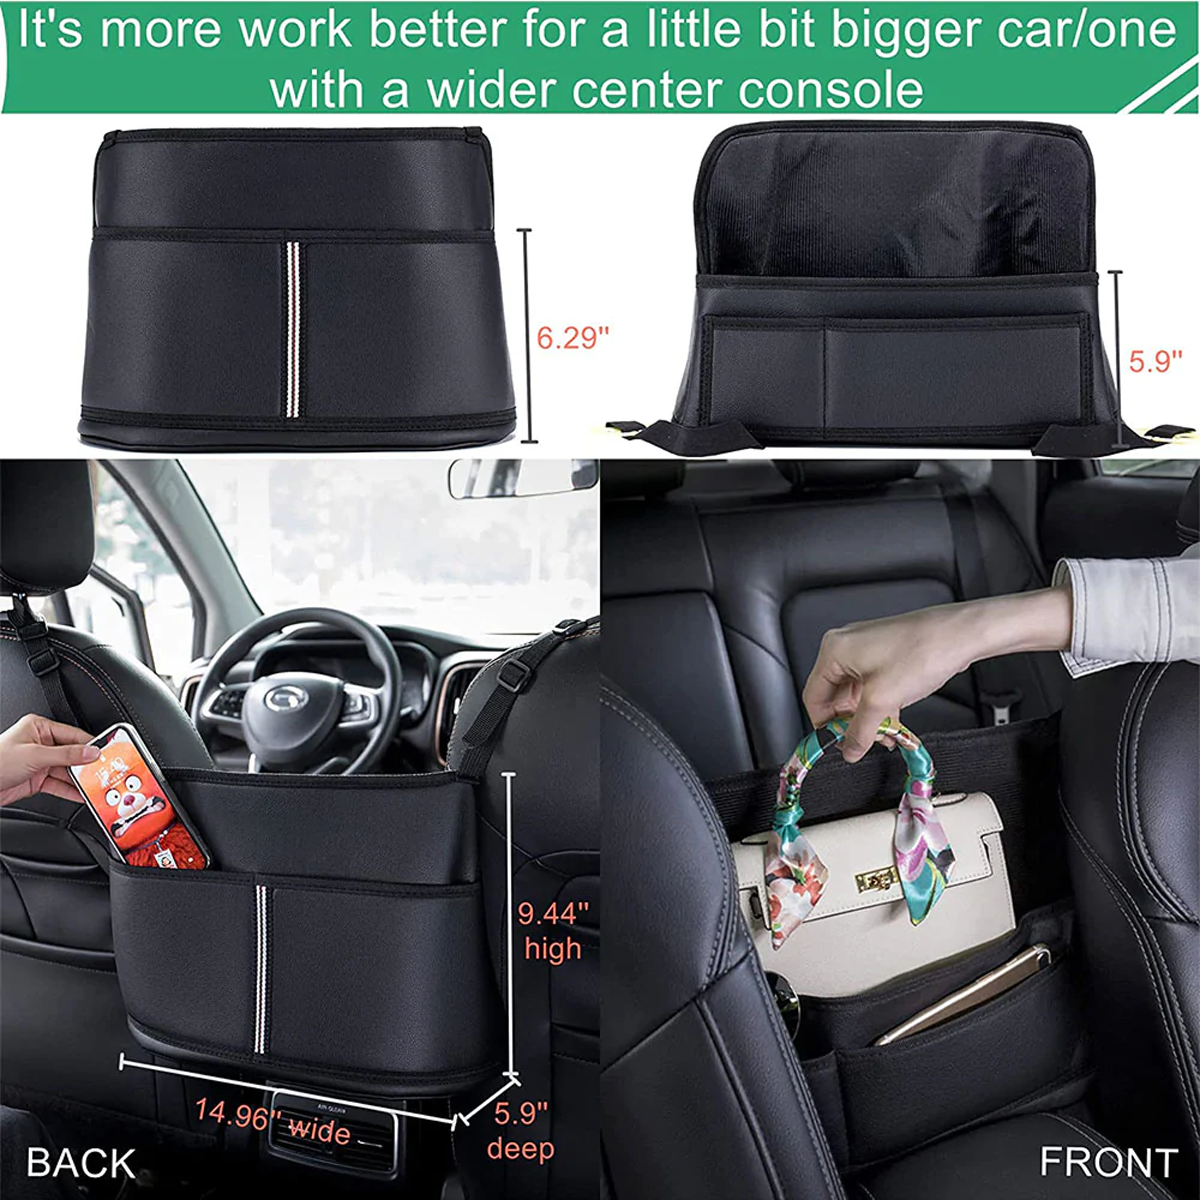 Car Purse Holder for Car Handbag Holder Between Seats Premium PU Leather, Custom Fit For Car, Hanging Car Purse Storage Pocket Back Seat Pet Barrier DLFM223